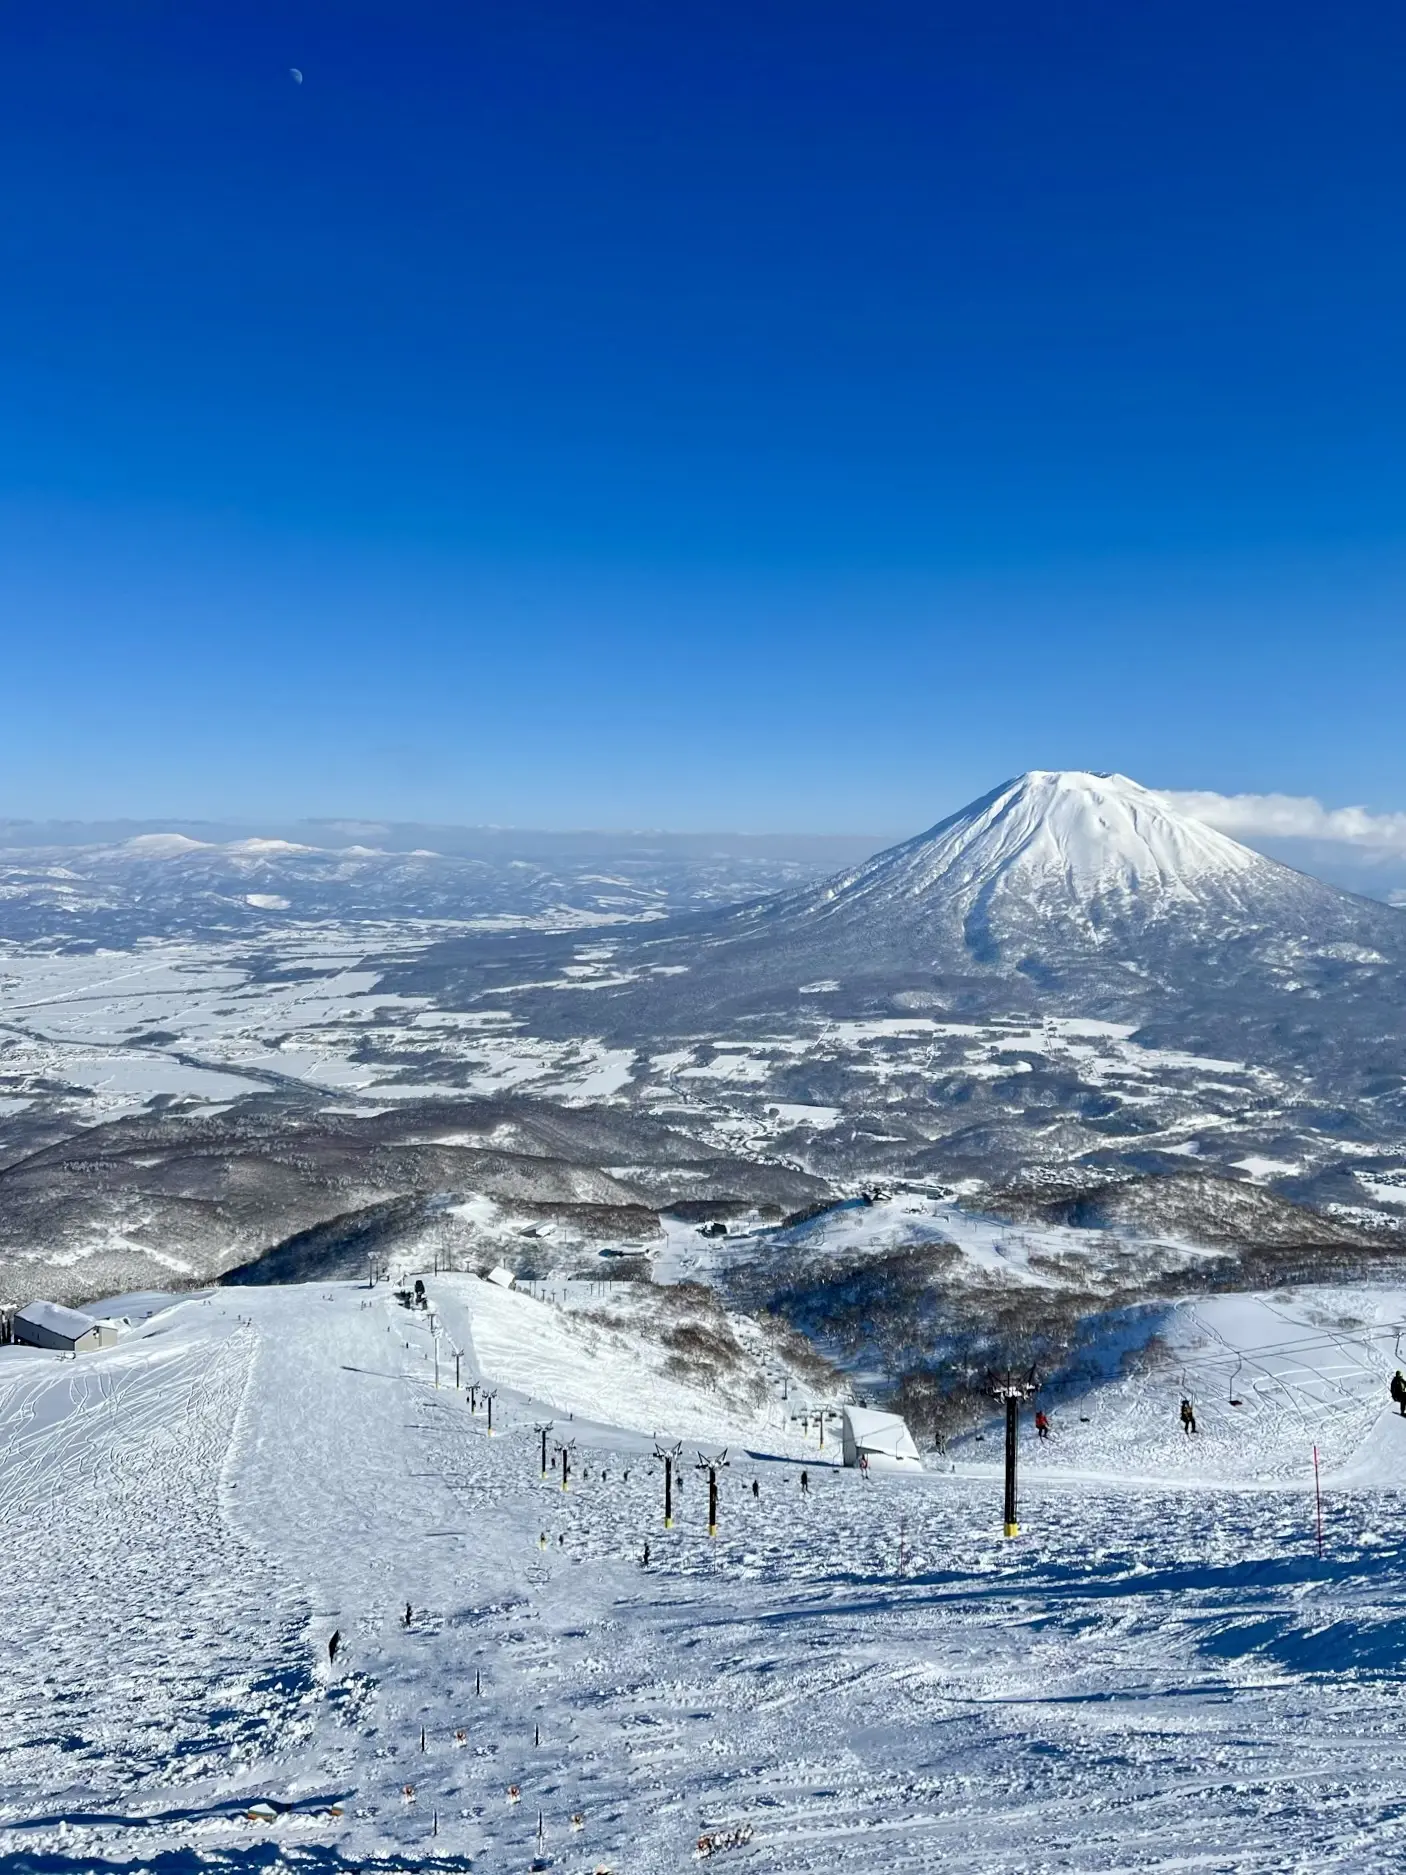 「ニセコ グラン・ヒラフスキー場」から見た蝦夷富士「羊蹄山」